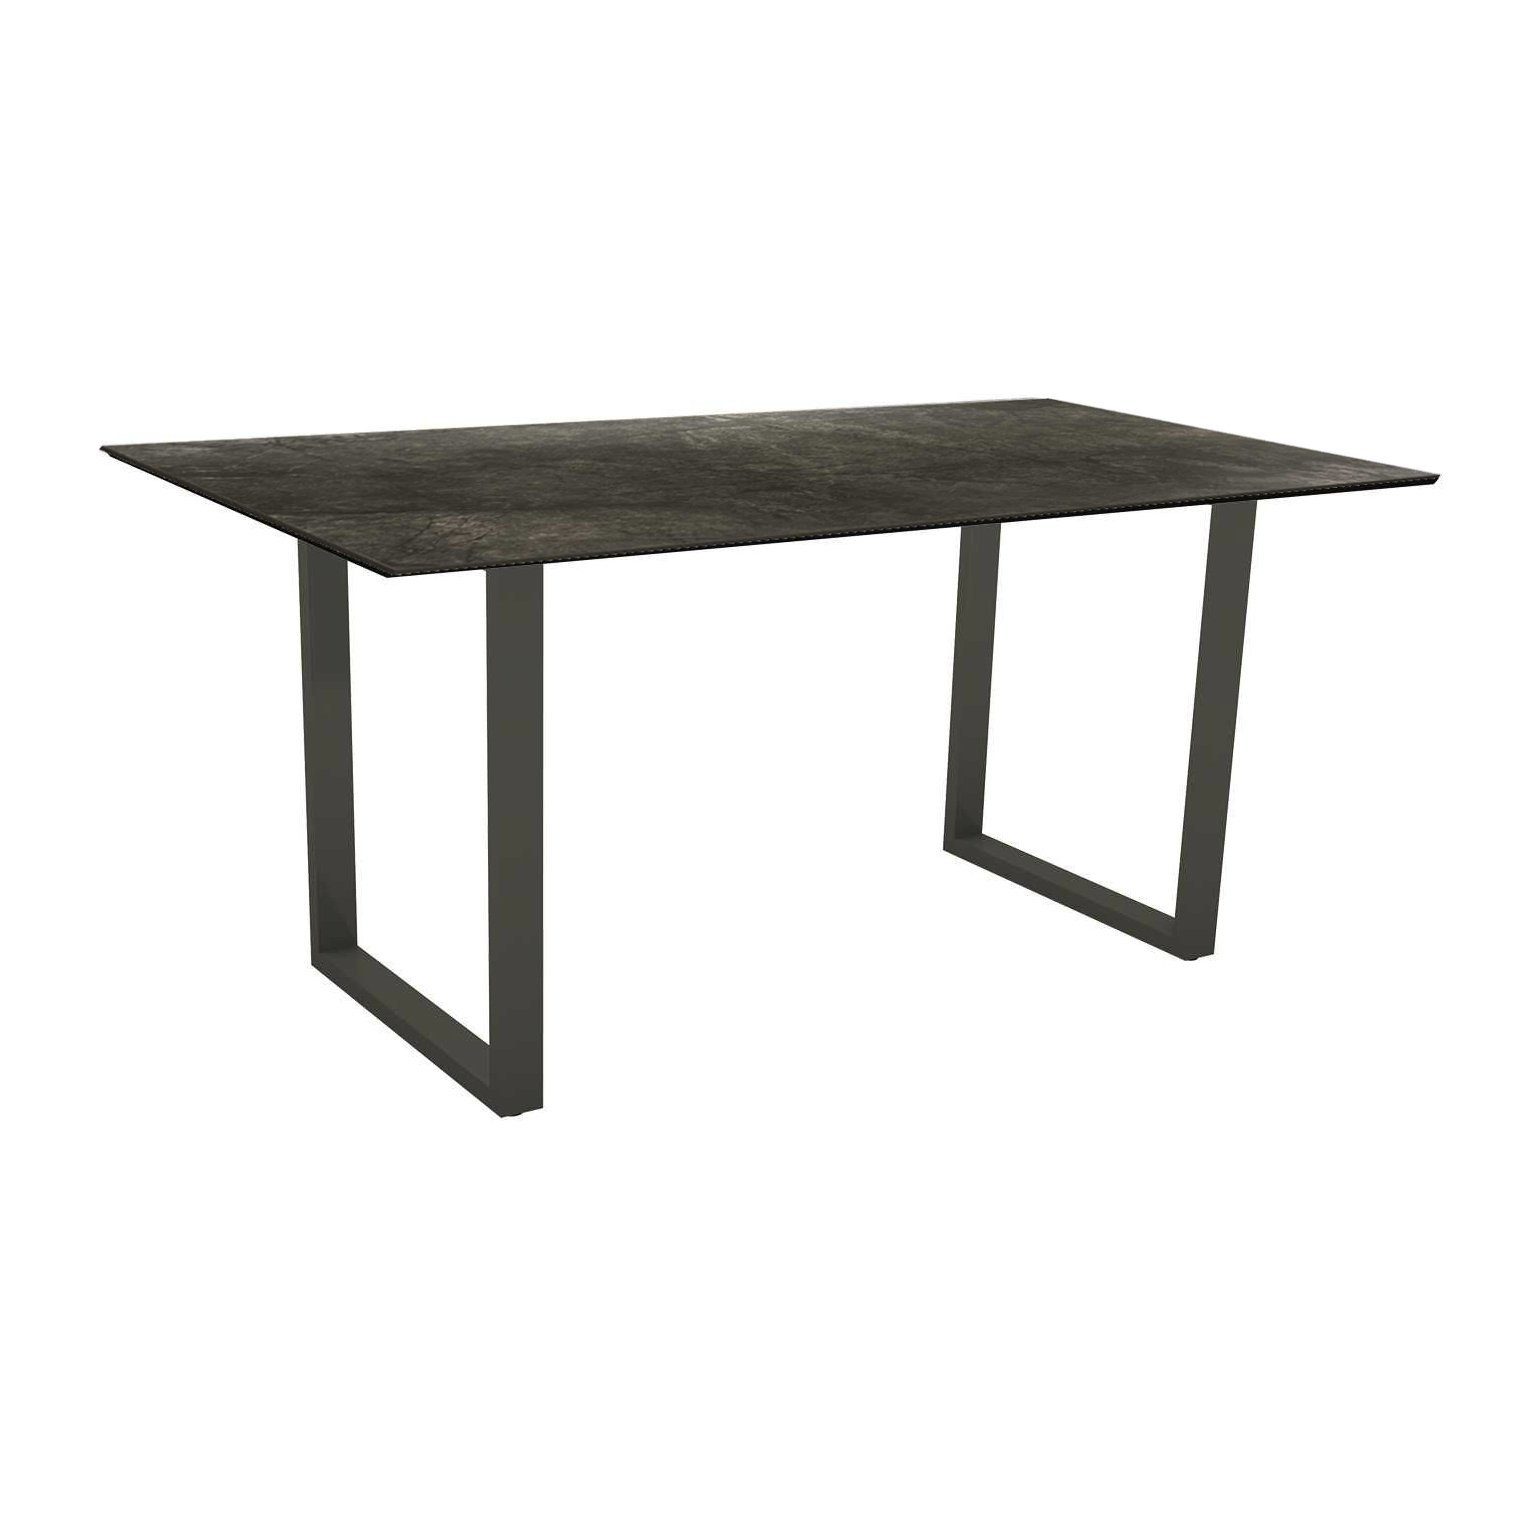 Stern Kufentisch, Gestell Aluminium anthrazit, Tischplatte HPL Dark Marble, Tischgröße: 160x90 cm